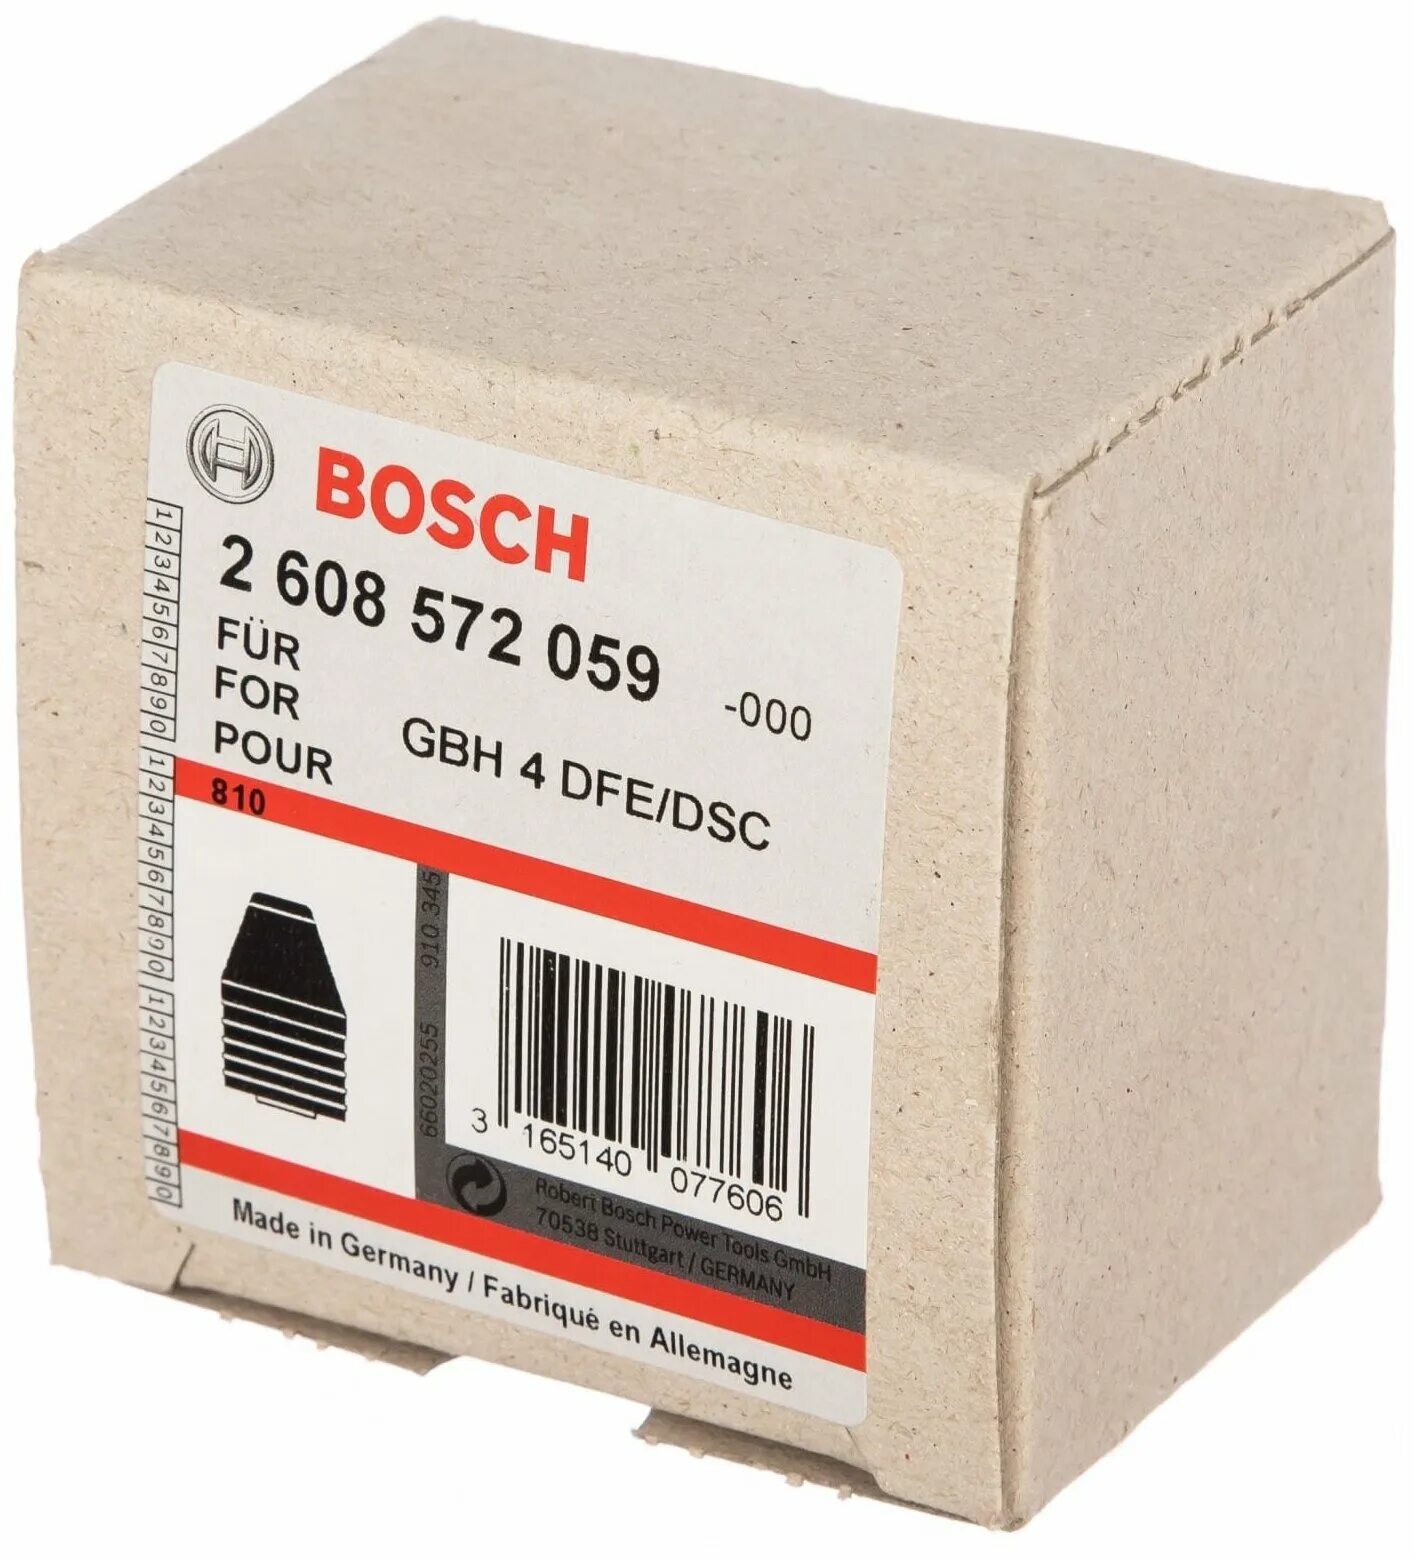 Купить патроны bosch. Bosch патрон 2.608.572.059. Патрон Bosch 2 608 572 034. Патрон Bosch 2 608 572 213. Сменный патрон SDS Plus 2 608 572 213.